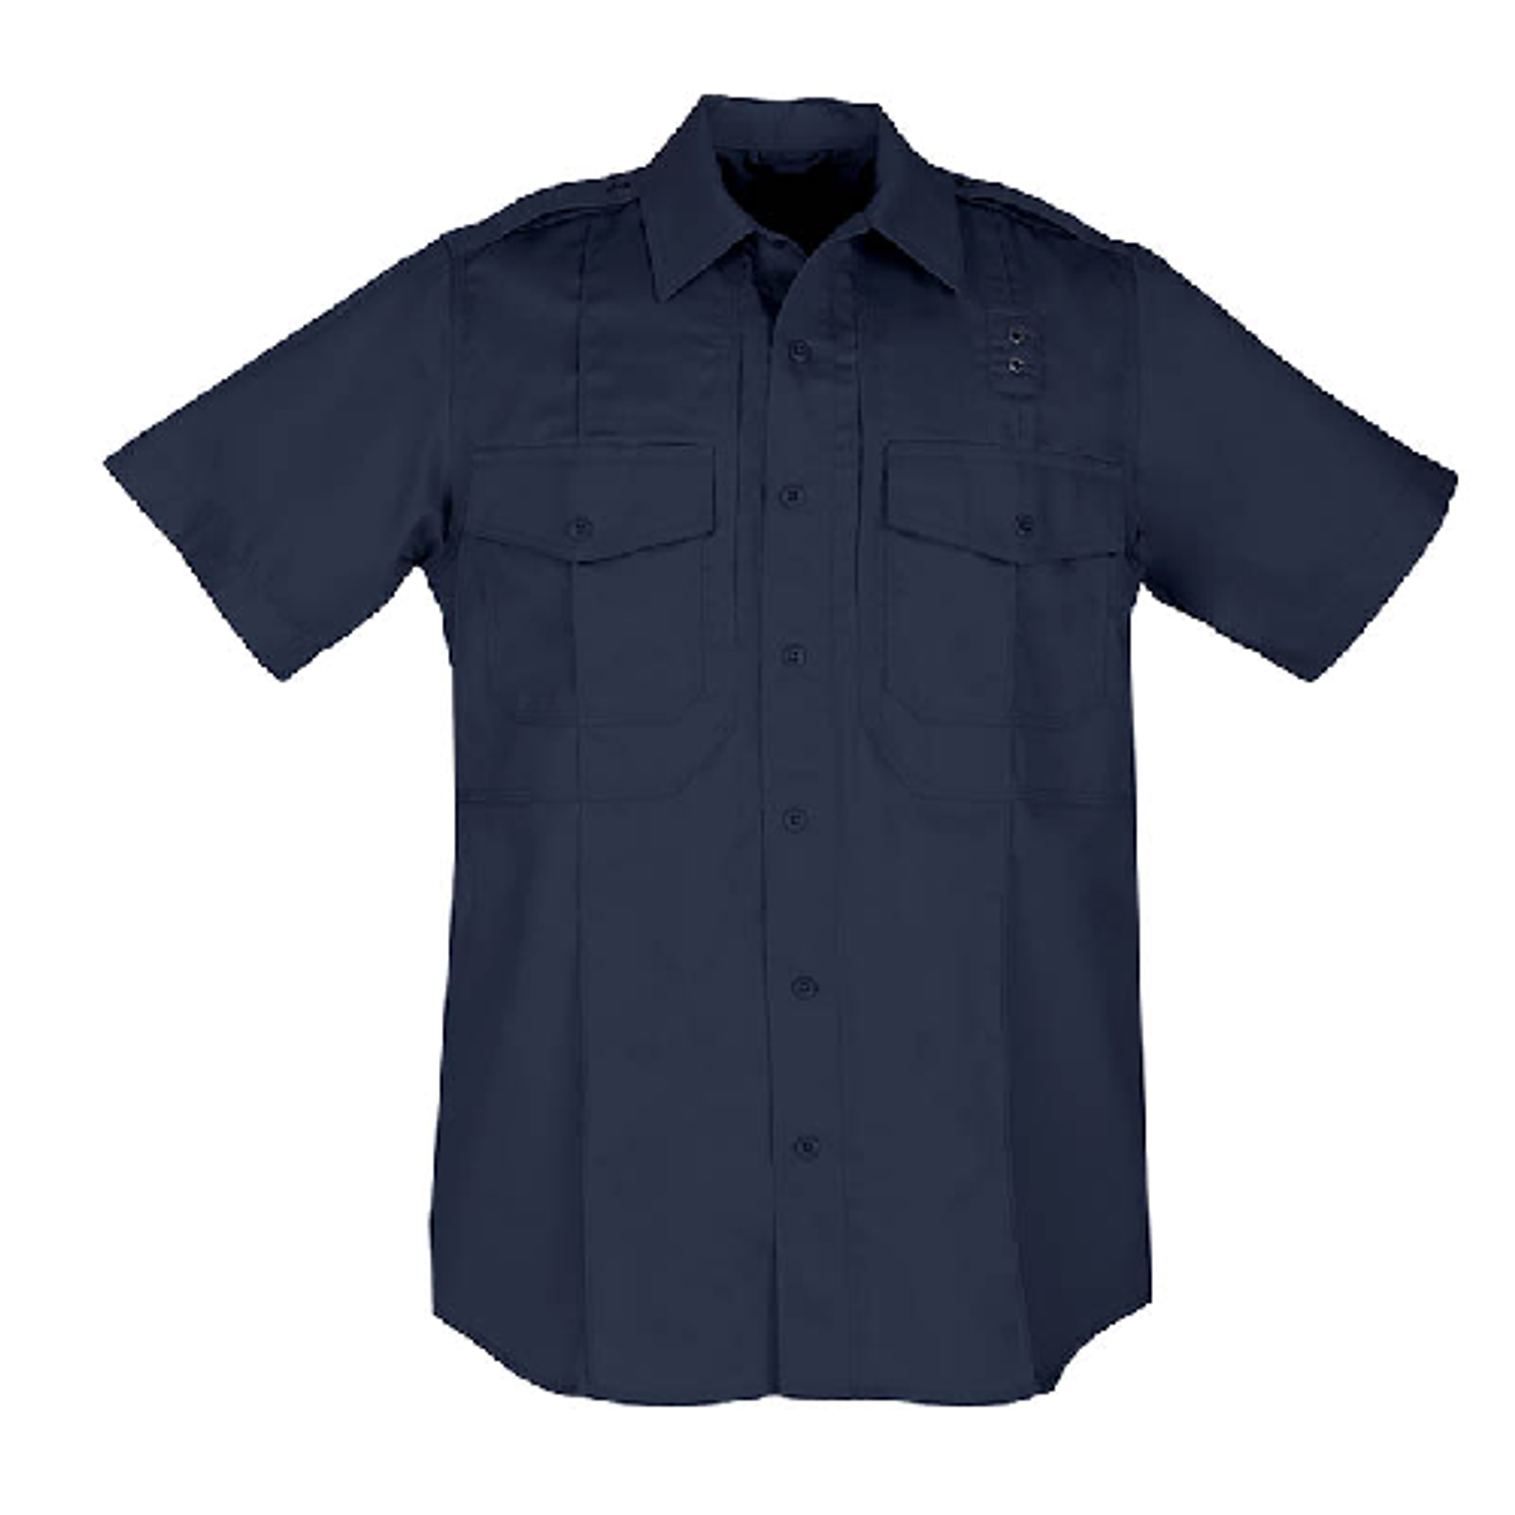 Class B Pdu Twill Shirt - KR5-71177750LR